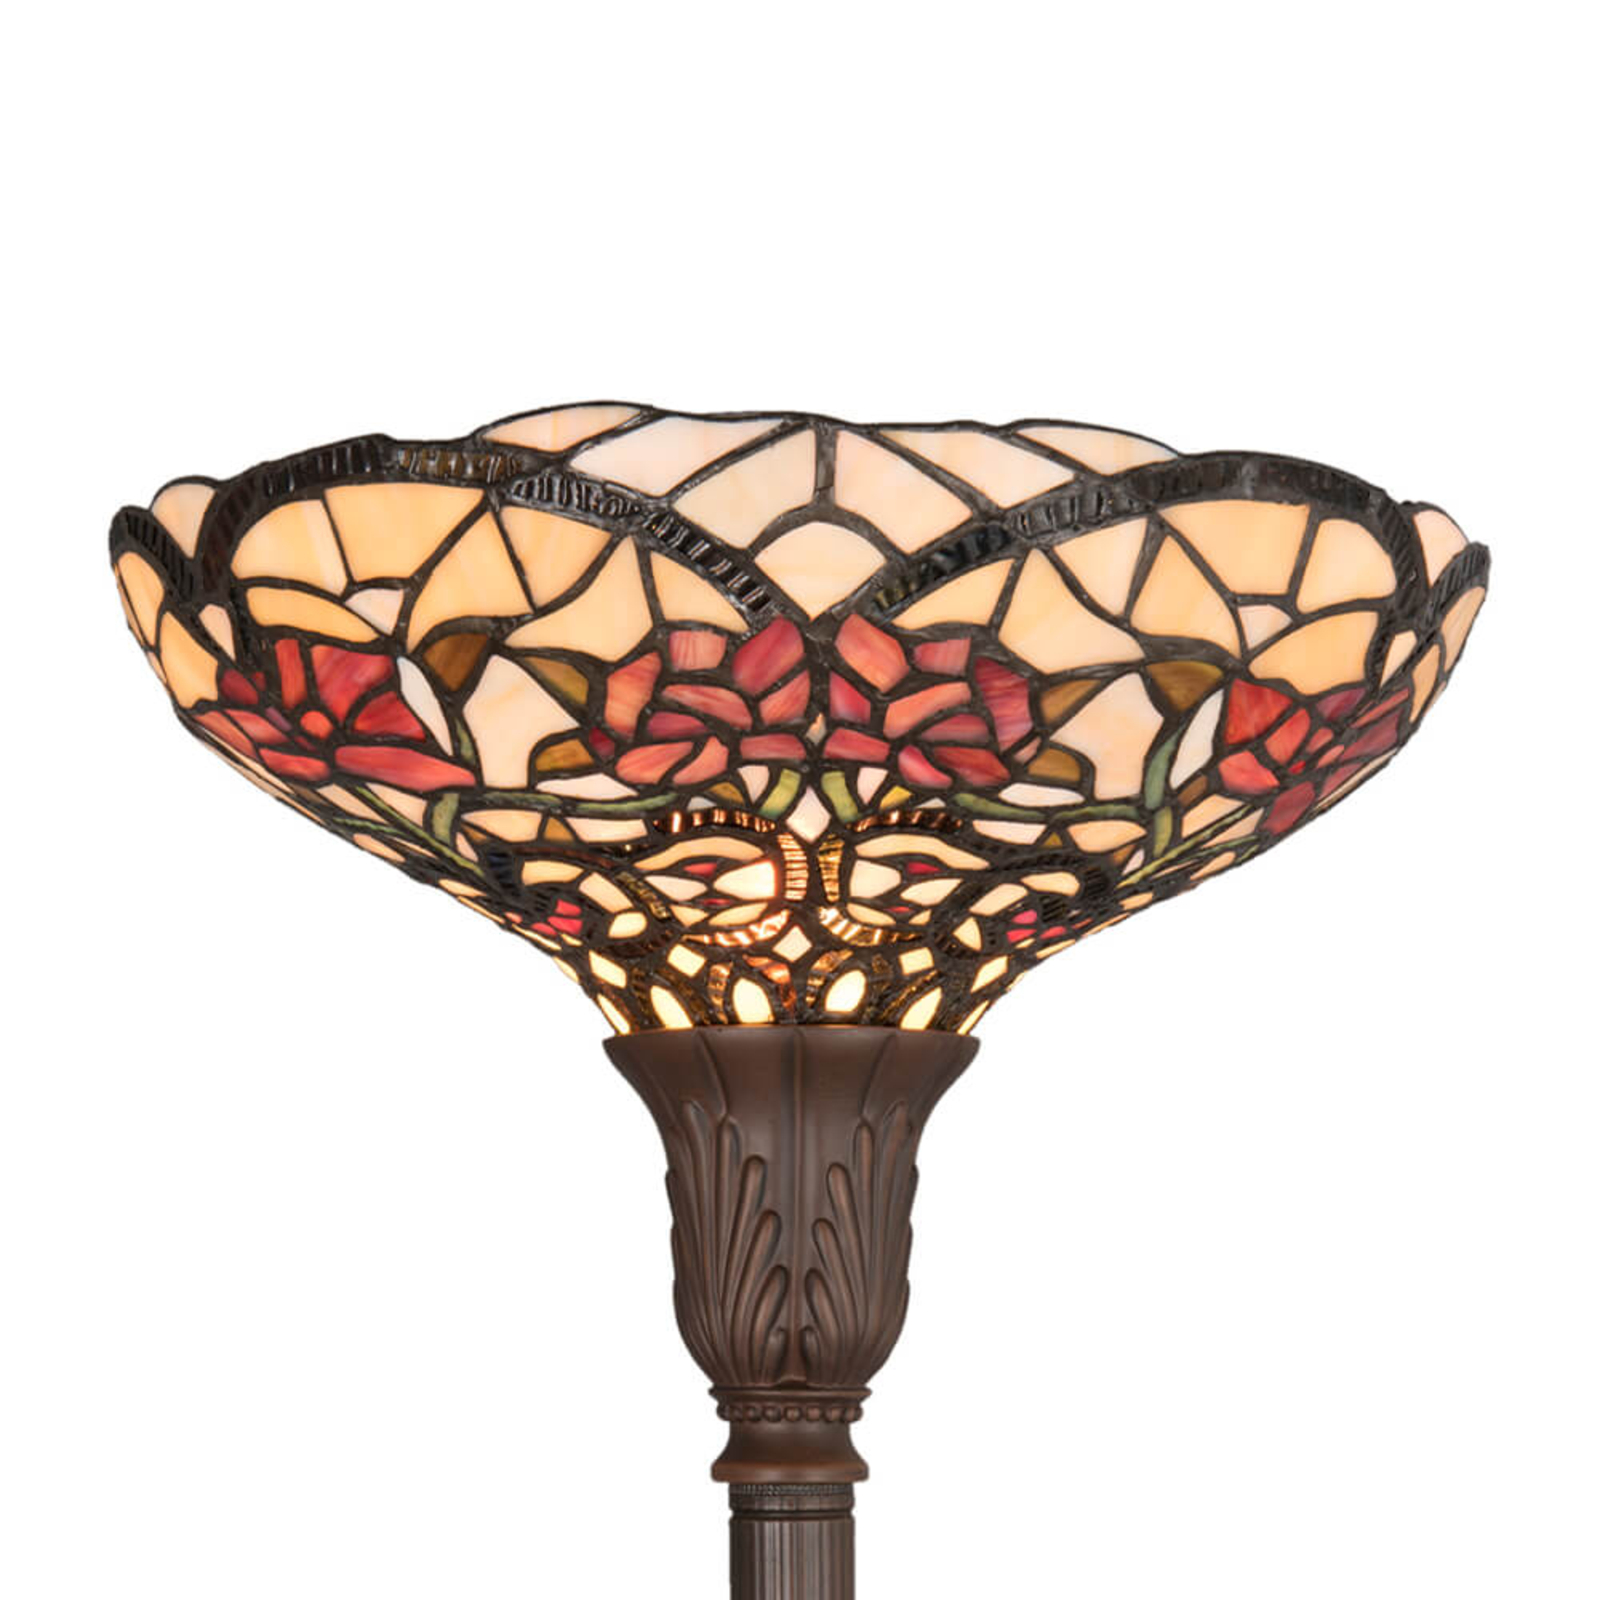 Voorjaarsachtige vloerlamp Kayla in Tiffany-stijl